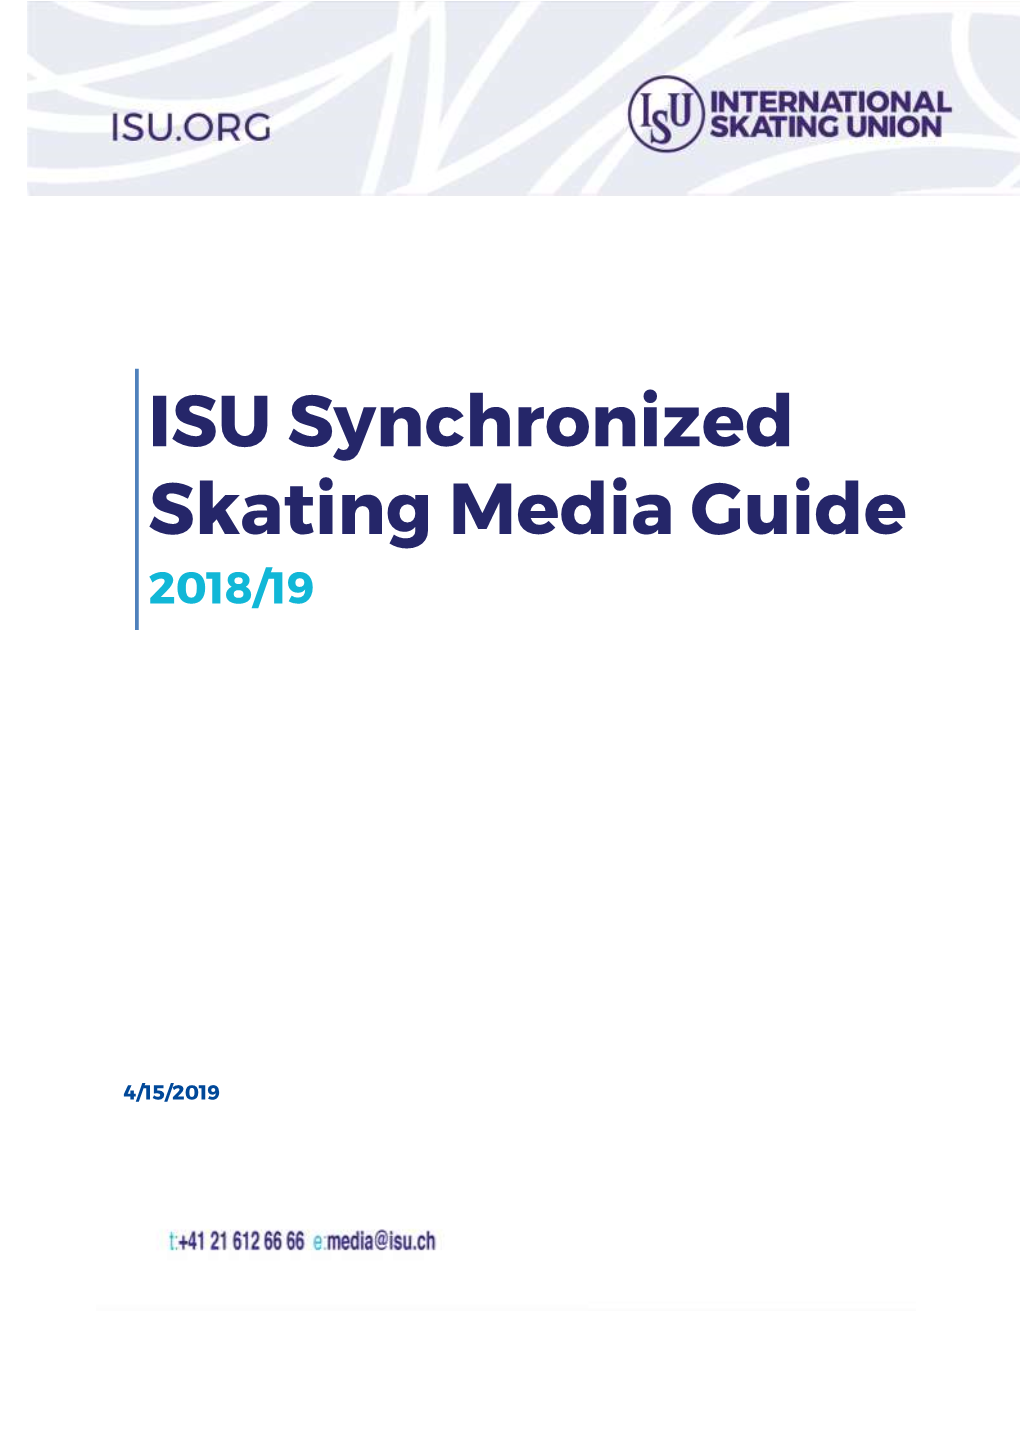 ISU Synchronized Skating Media Guide 2018/19